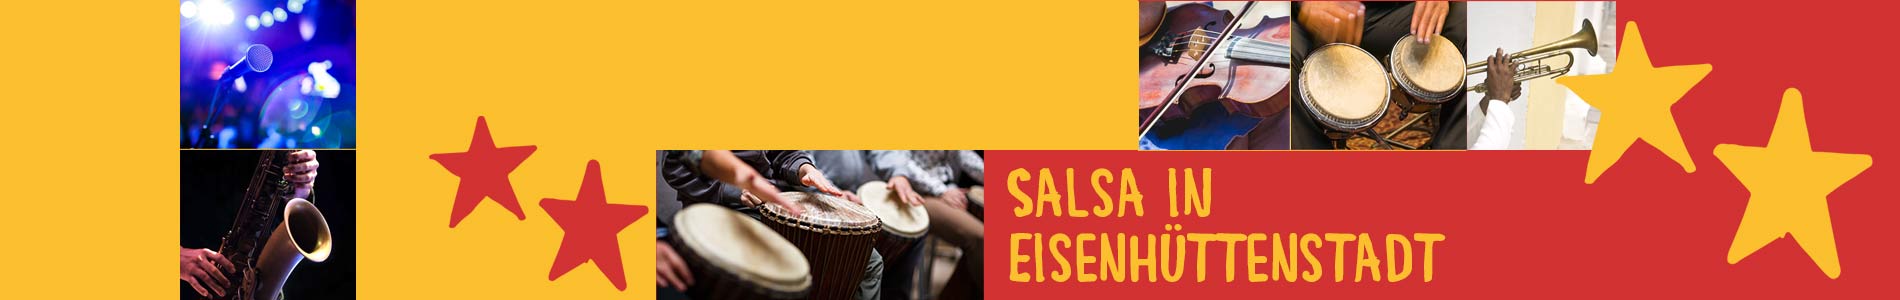 Salsa in Eisenhüttenstadt – Salsa lernen und tanzen, Tanzkurse, Partys, Veranstaltungen